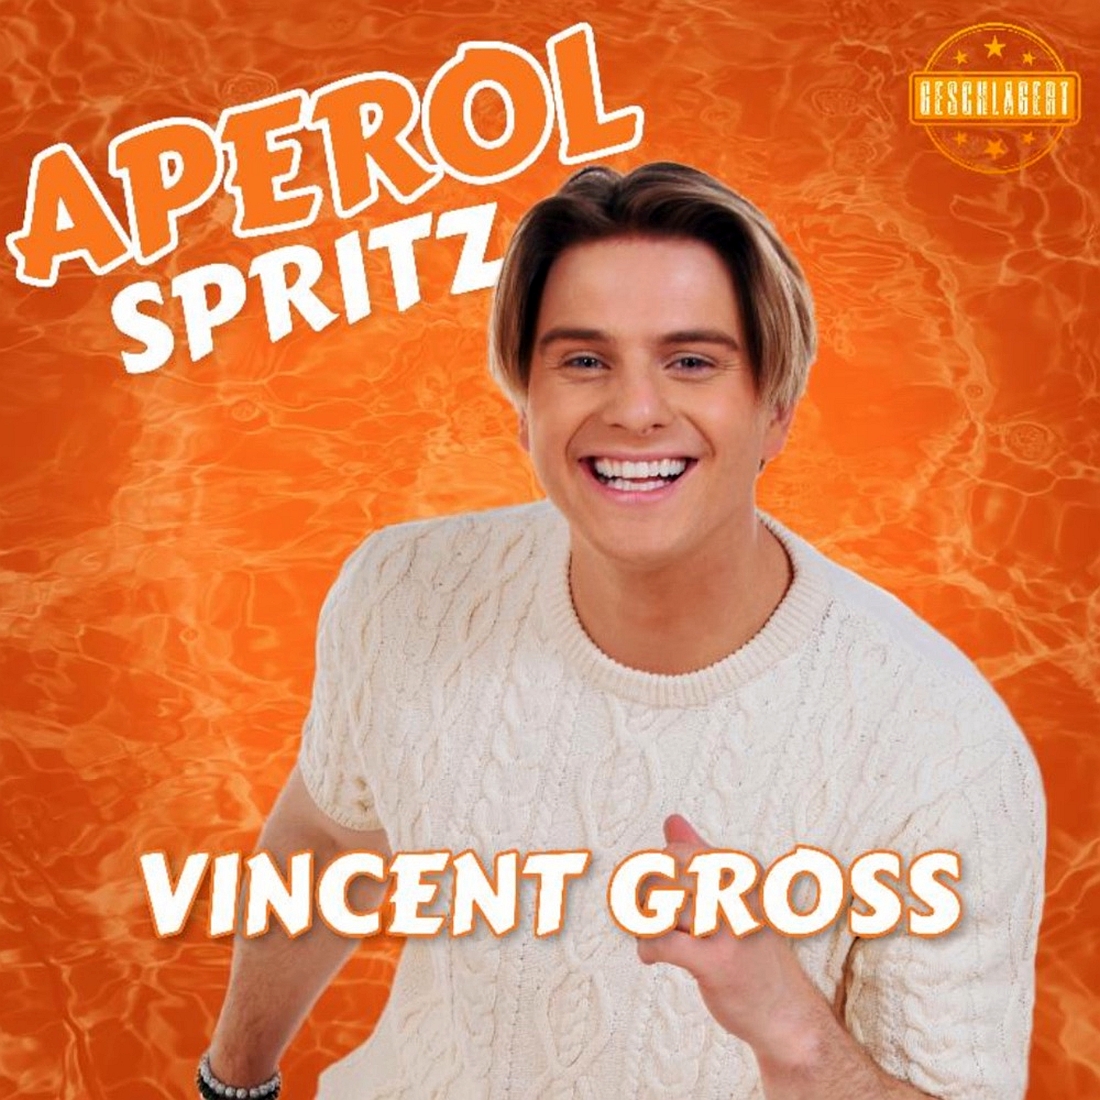 Vincent Gross - Aperol Spritz (Geschlagert)